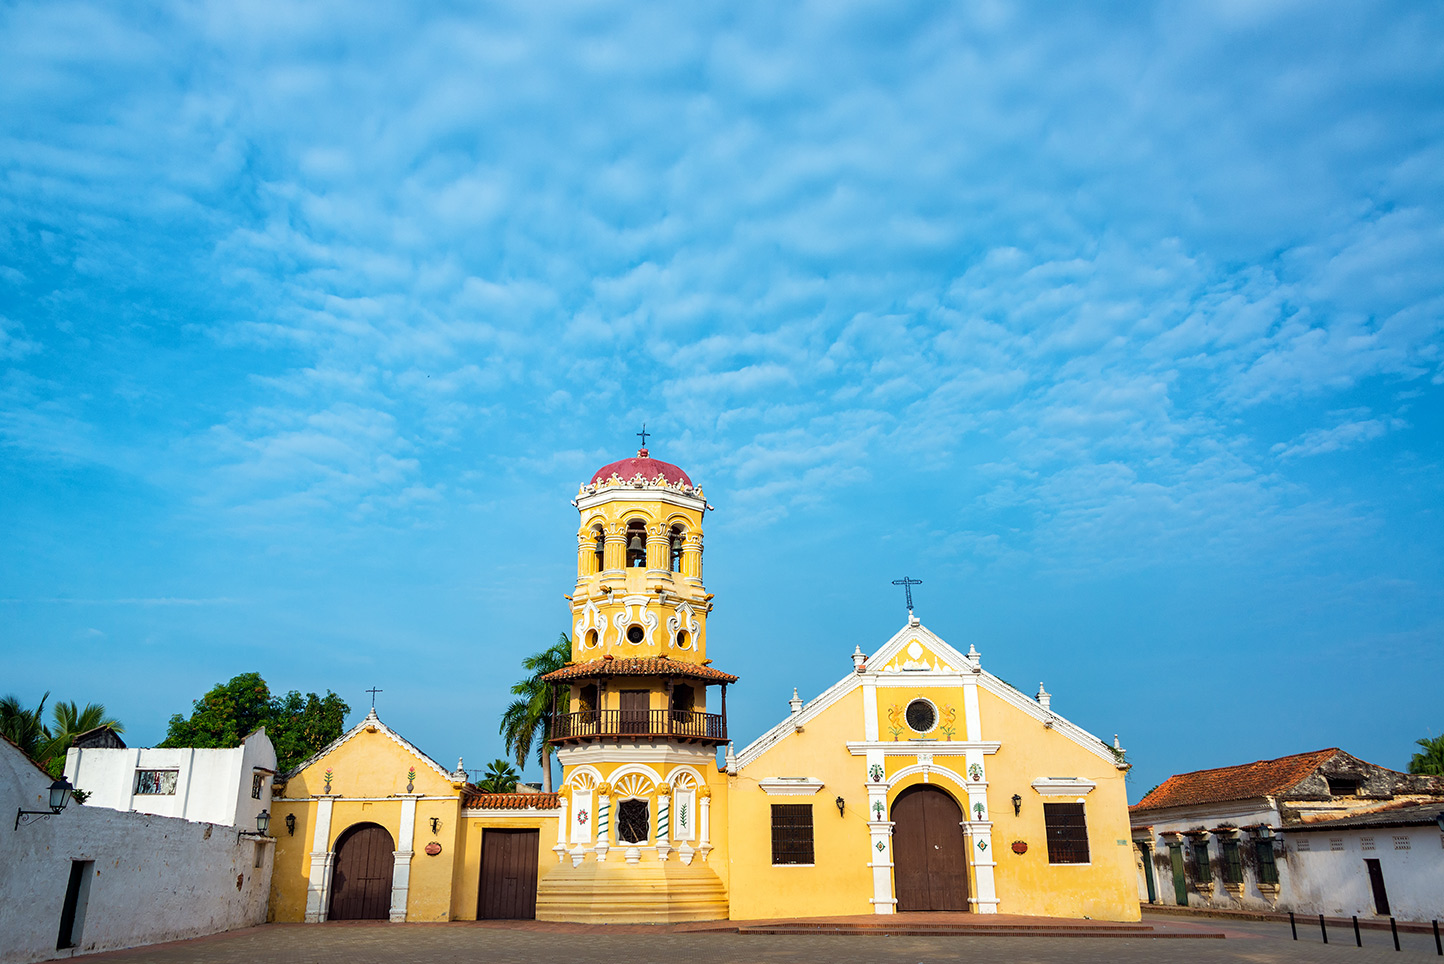 Aprende más sobre la historia de Colombia, a través de la arquitectura colonial de Mompox